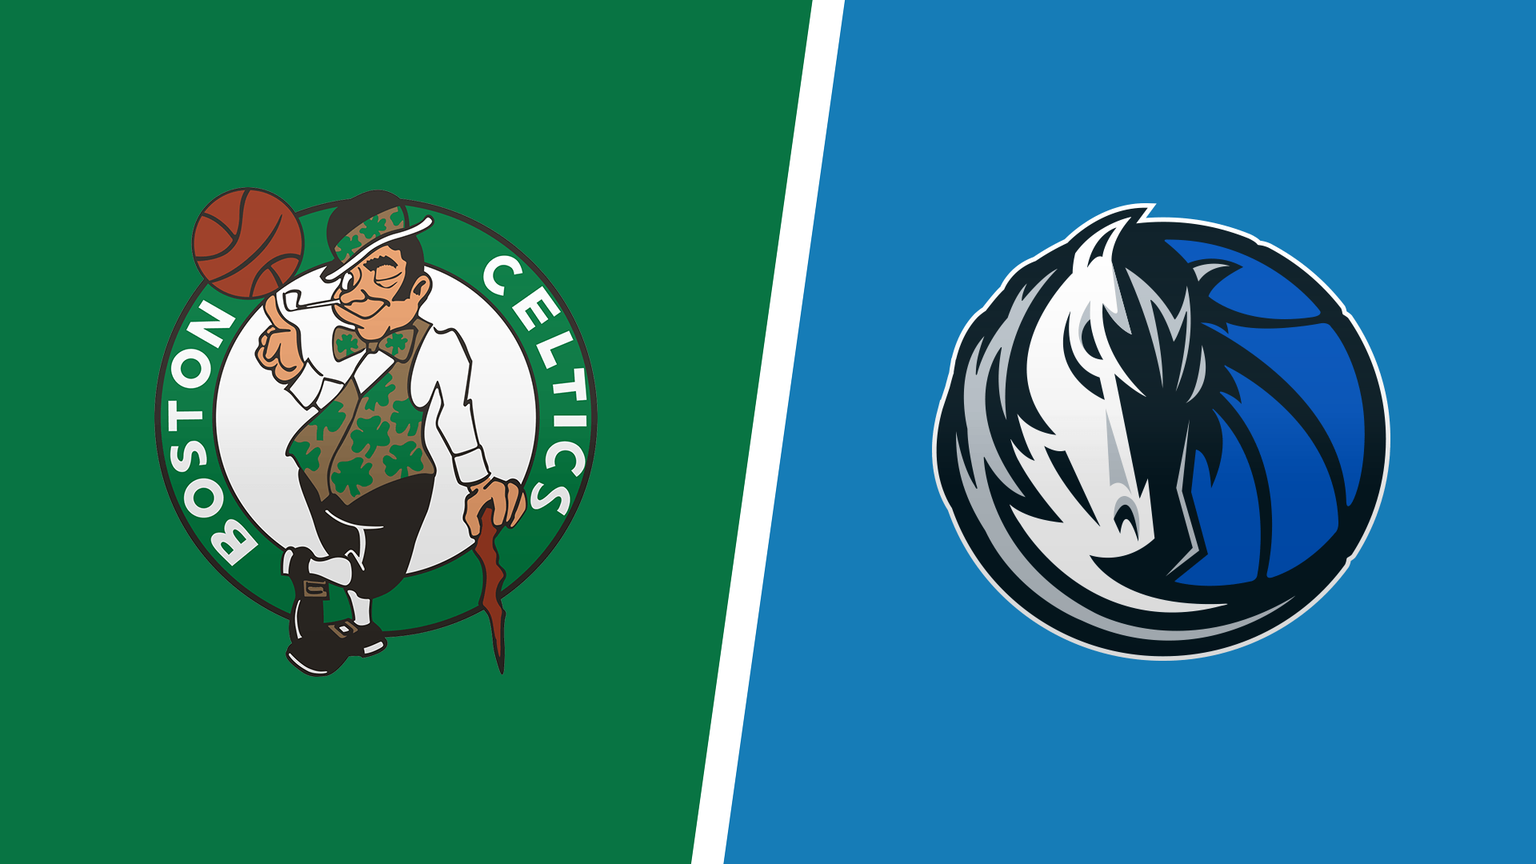 Boston Celtics Vs Dallas Mavericks 1536x864 Crop 